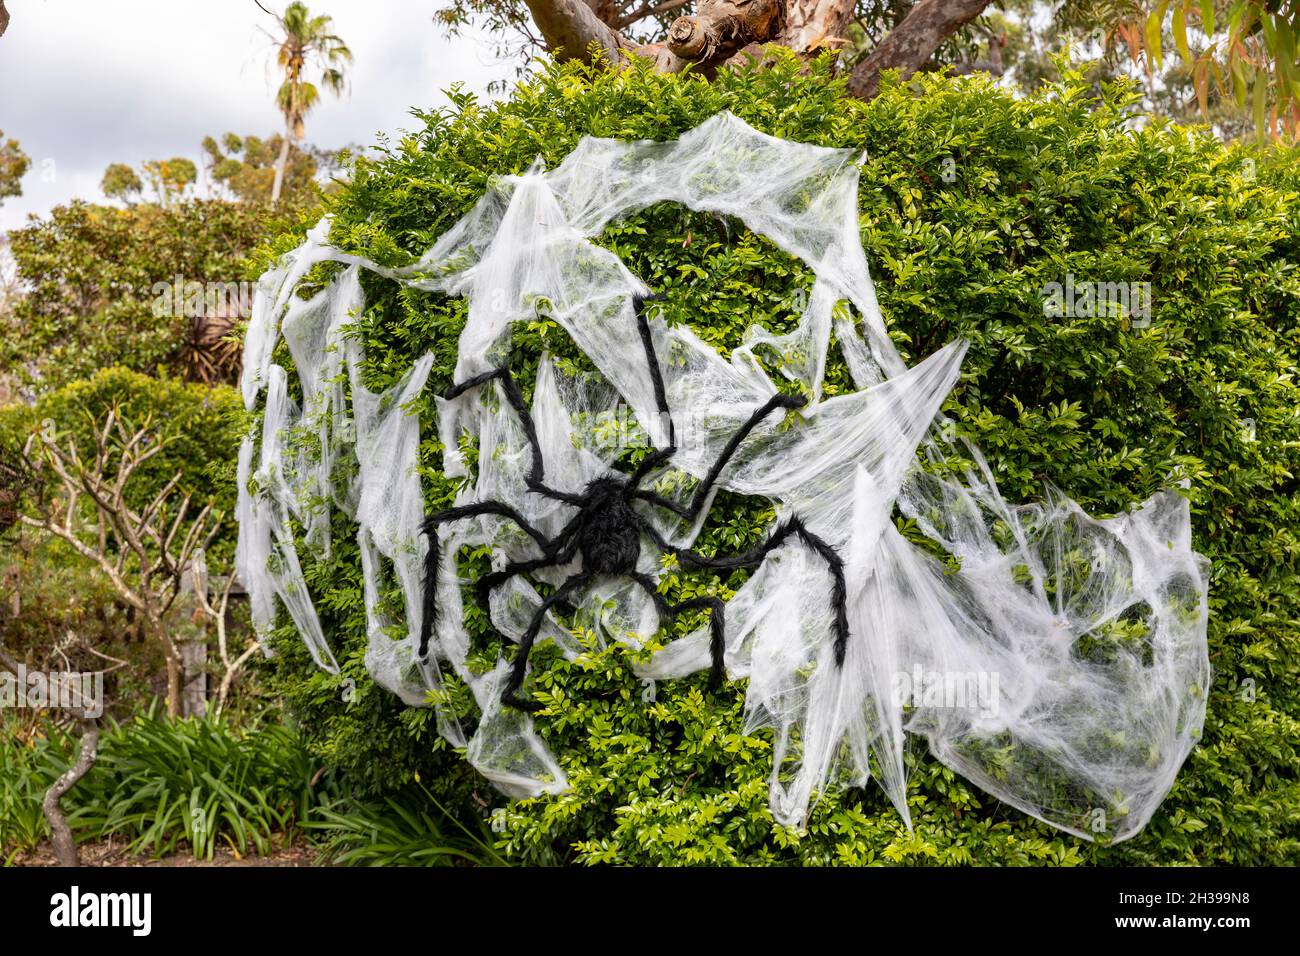 Halloween Dekorationen Spinnennetz und riesige Spinne schmücken einen Baum in Sydney für halloween Feiern, Australien Stockfoto